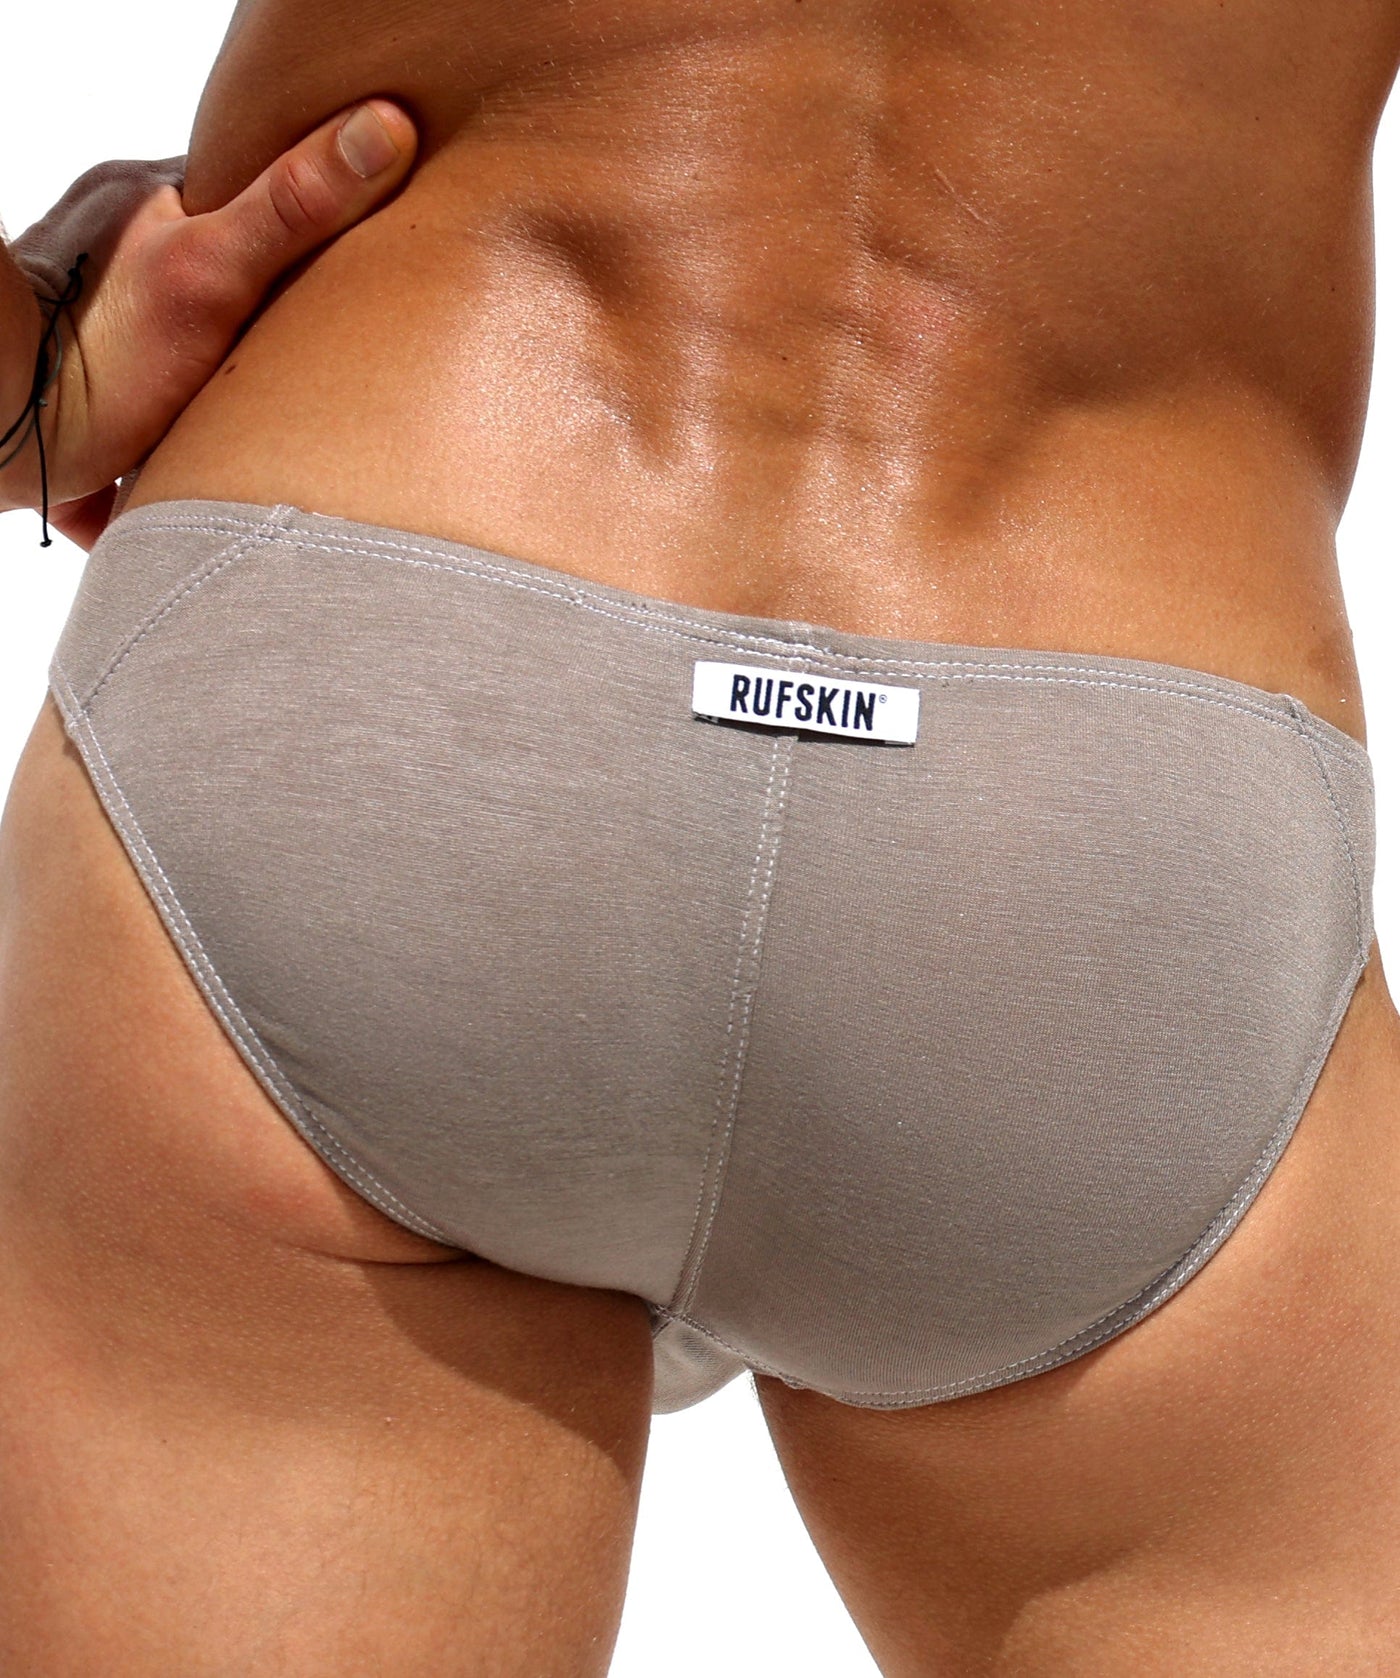 RUFSKIN® VIRGO GLACIER Signature Seamless Front Stretch Rayon Underwear  Briefs